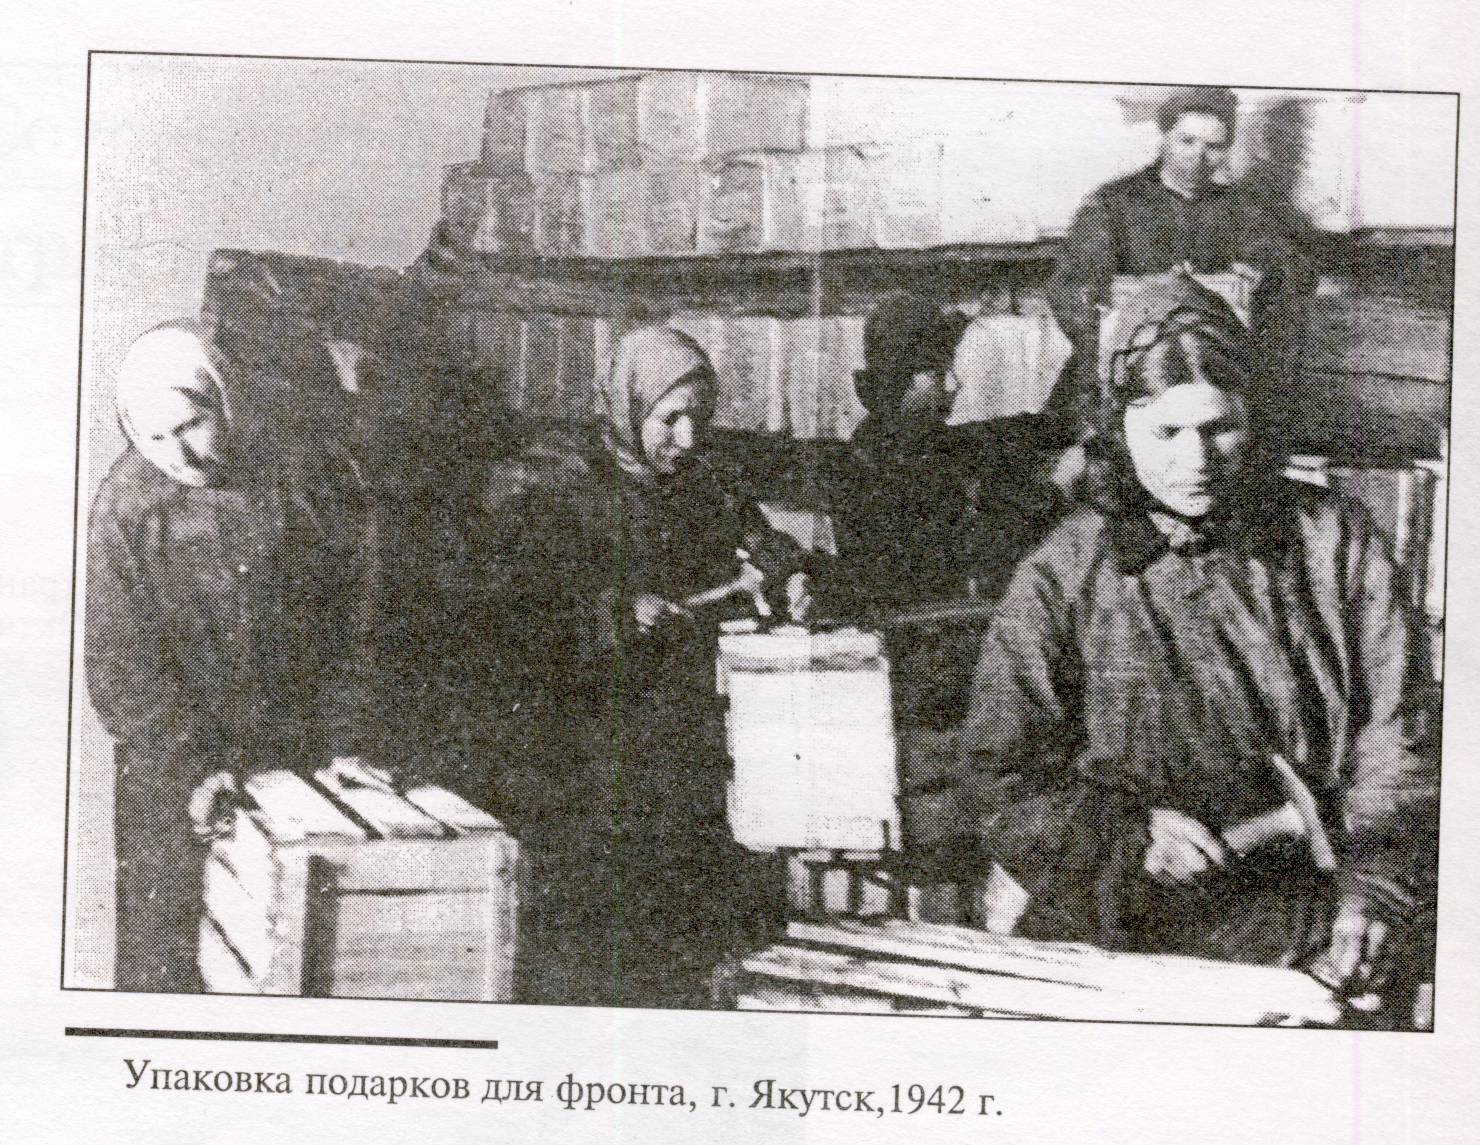 Якутск в годы войны: начало больших строек